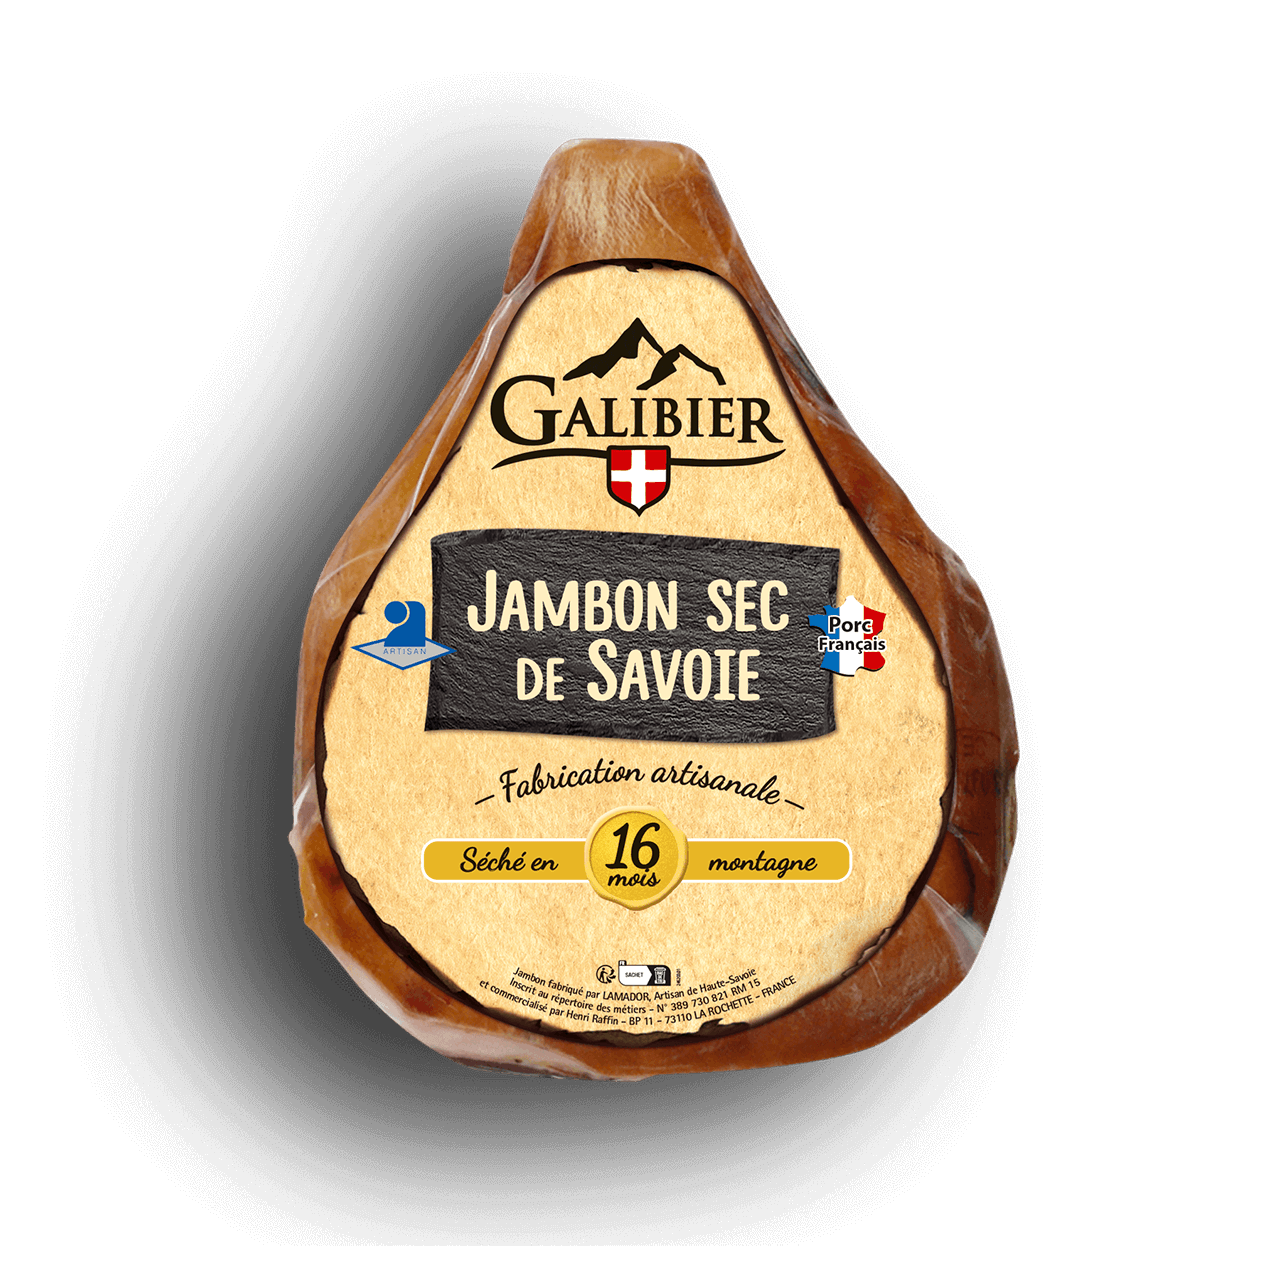 Galibier - Jambons de Savoie